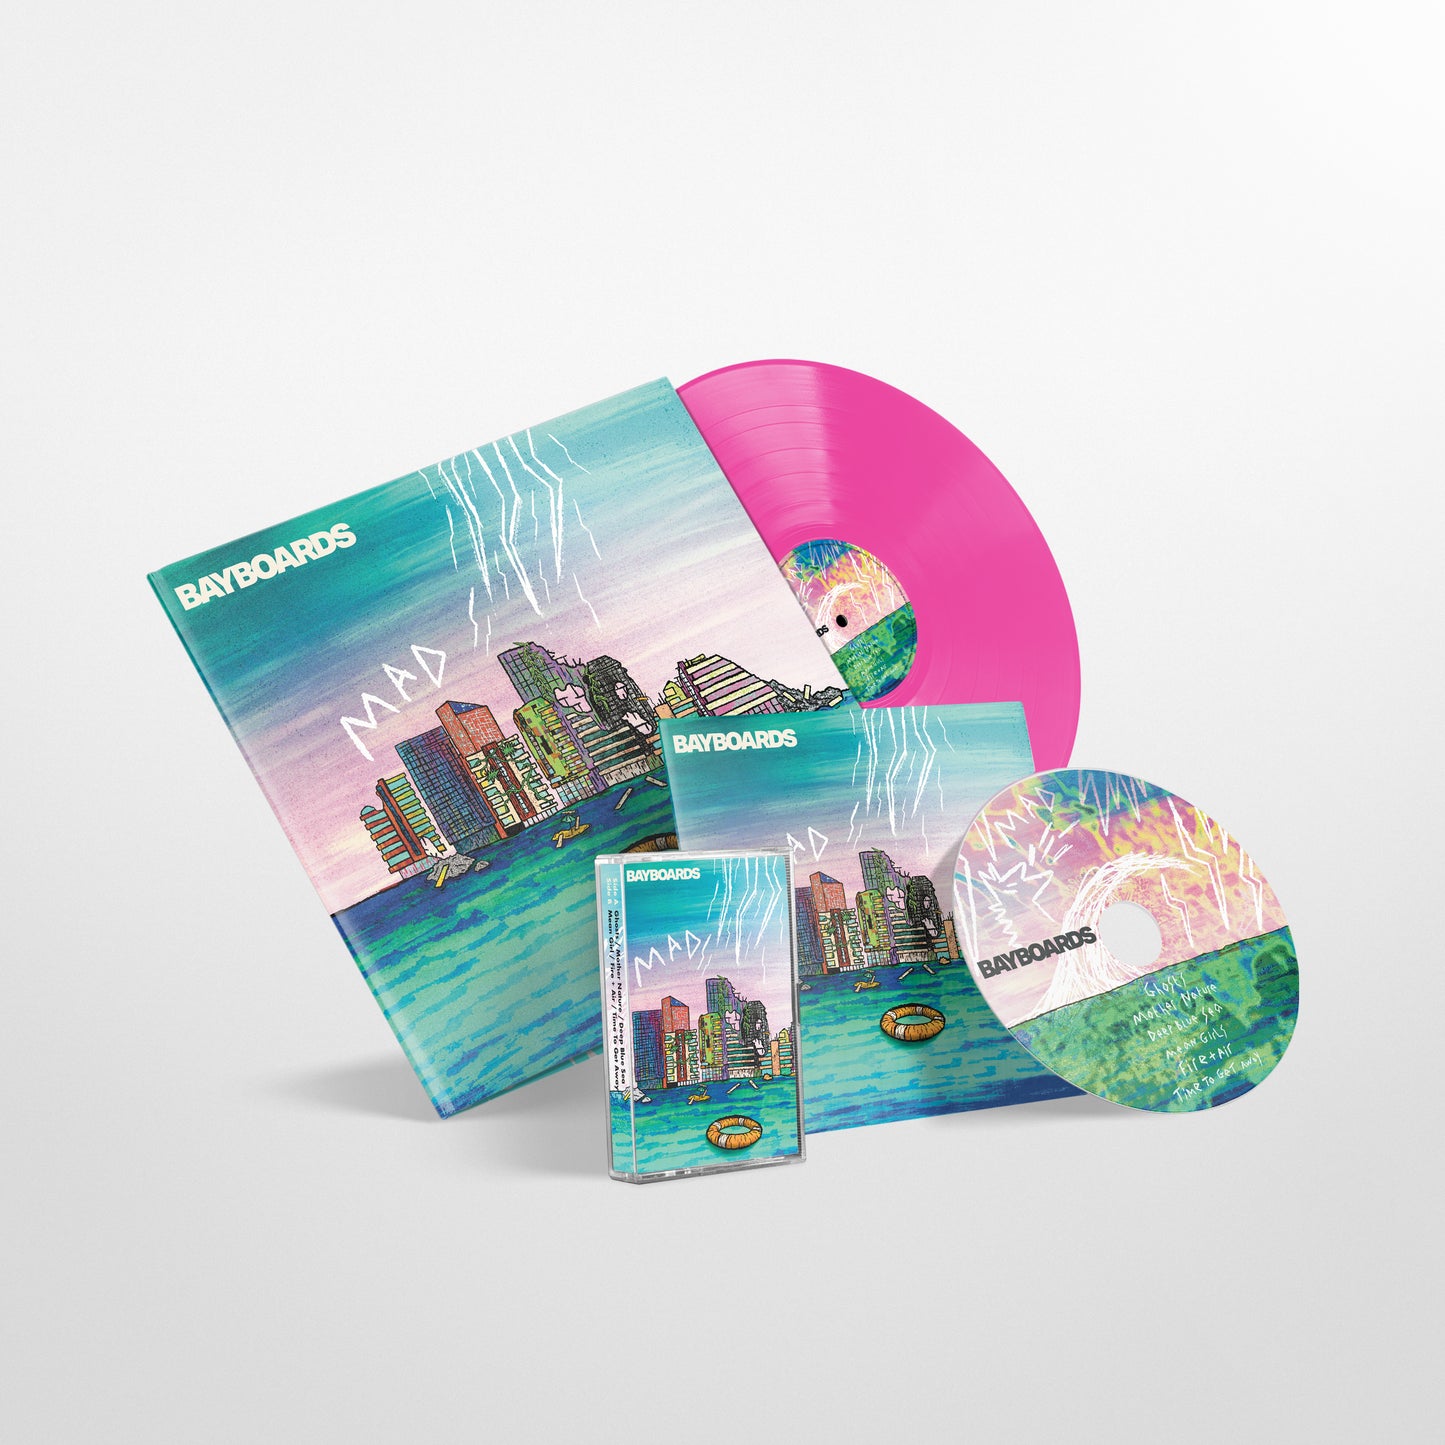 Bayboards - 'Modern Age Disaster' EP - Bundle - Pink 12" Vinyl Disc + CD + Cassette